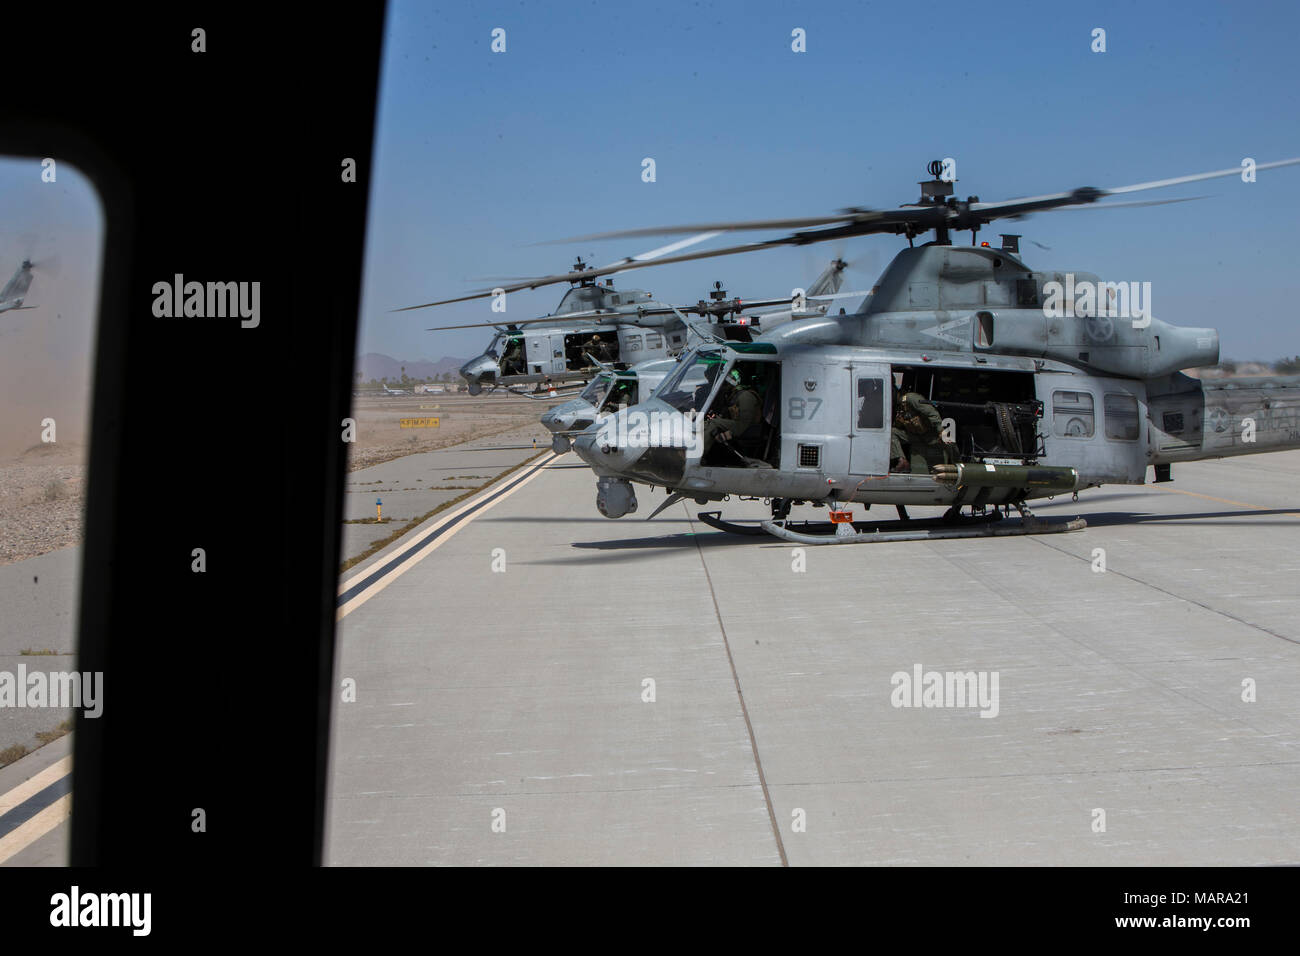 Los pilotos del Cuerpo de Marines de EE.UU. y jefes de la tripulación de vuelo despegue utilizando helicópteros UH-1Y Venom durante el aire a tierra refinamiento en apoyo de armas y tácticas del curso de instructores 2-18 en Marine Corps Air Station Yuma, Yuma, Arizona, el 2 de abril. El WTI es un evento de capacitación de siete semanas alojados por armas y tácticas de Aviación Marina Escuadrón 1 cuadros, que enfatiza la integración operacional de las seis funciones de aviación del Cuerpo de Infantería de Marina en apoyo de una masa de aire marino Task Force y proporciona entrenamiento táctico avanzado estandarizado y certificación de instructor de la unidad de calificación para apoyar la formación y la Aviación Marina Rea Foto de stock